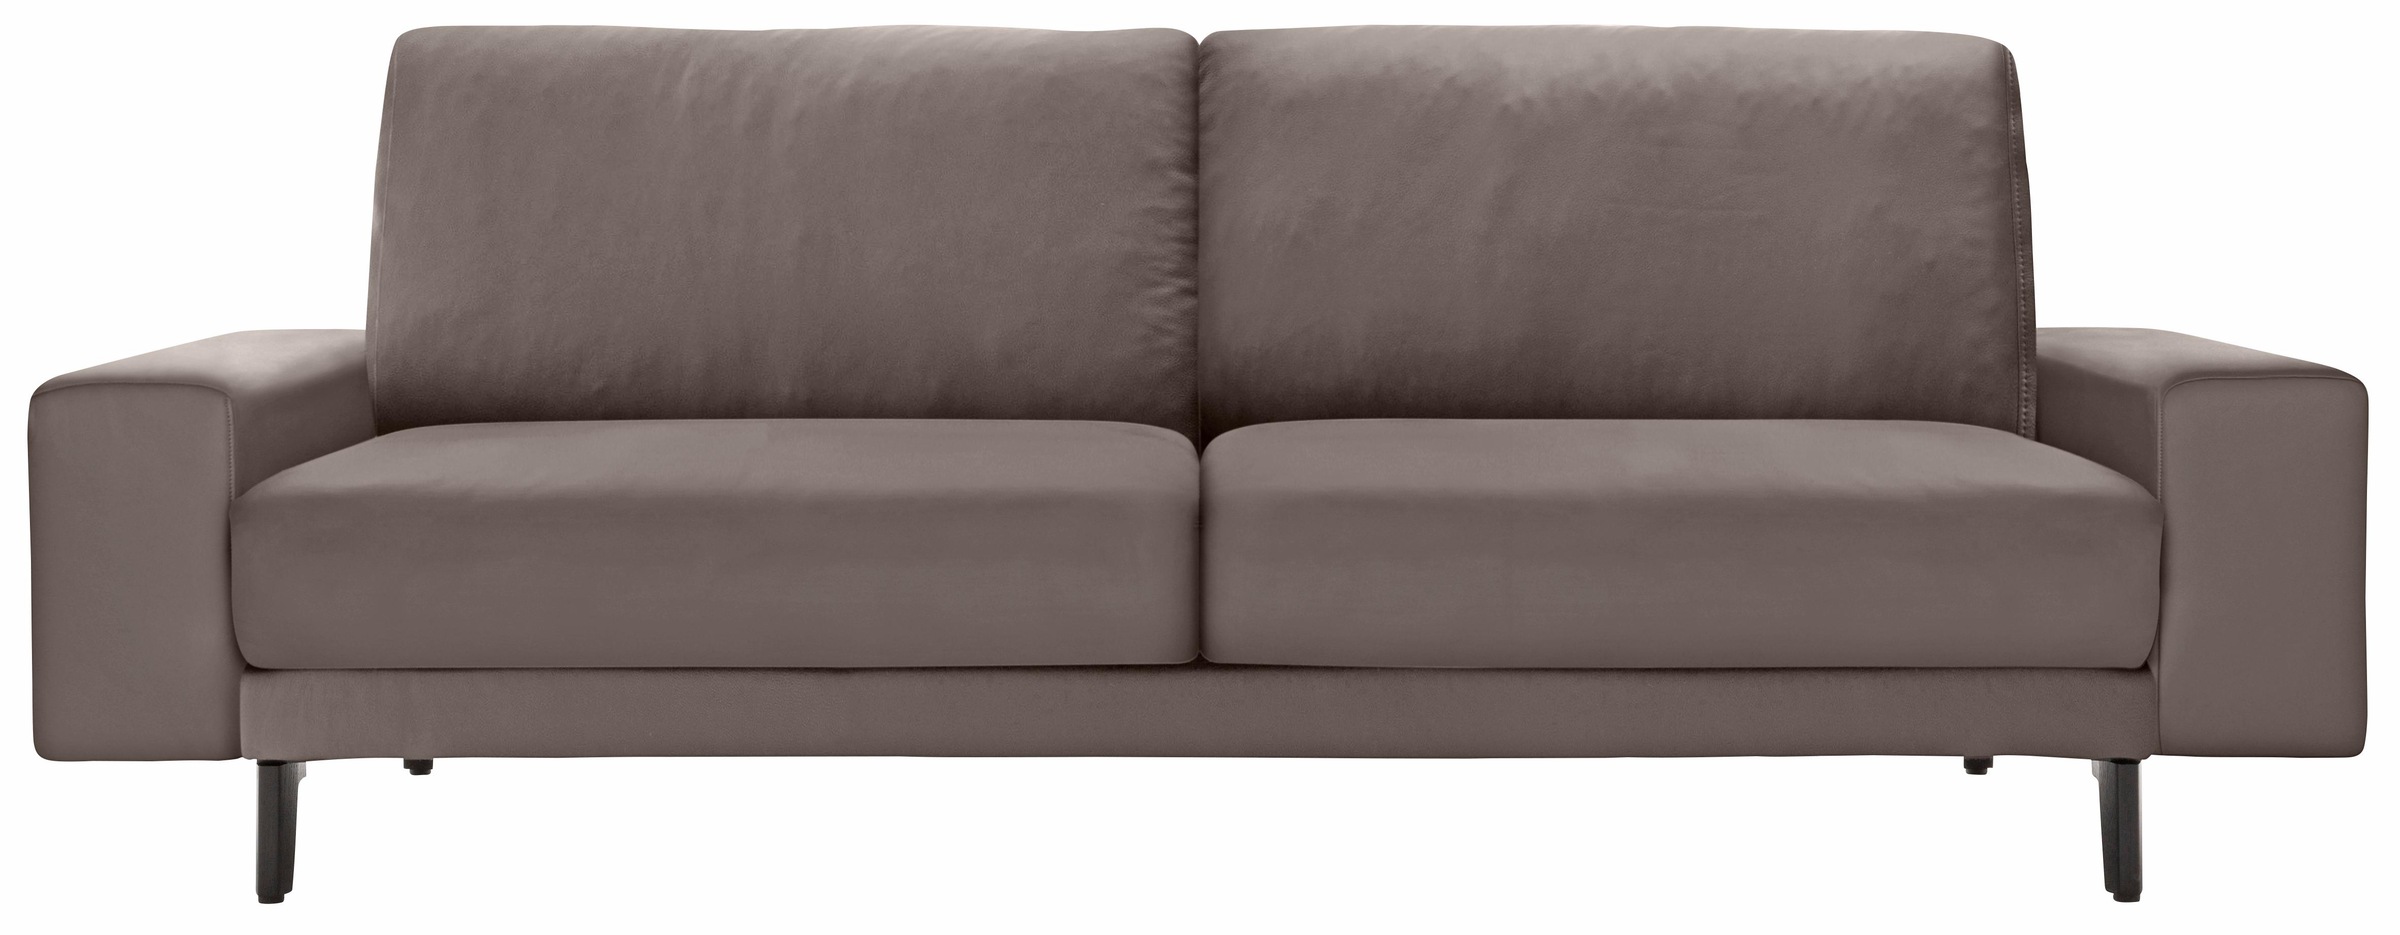 Breite »hs.450«, sofa 2-Sitzer hülsta cm in 180 bequem breit bestellen Alugussfüße niedrig, Armlehne umbragrau,